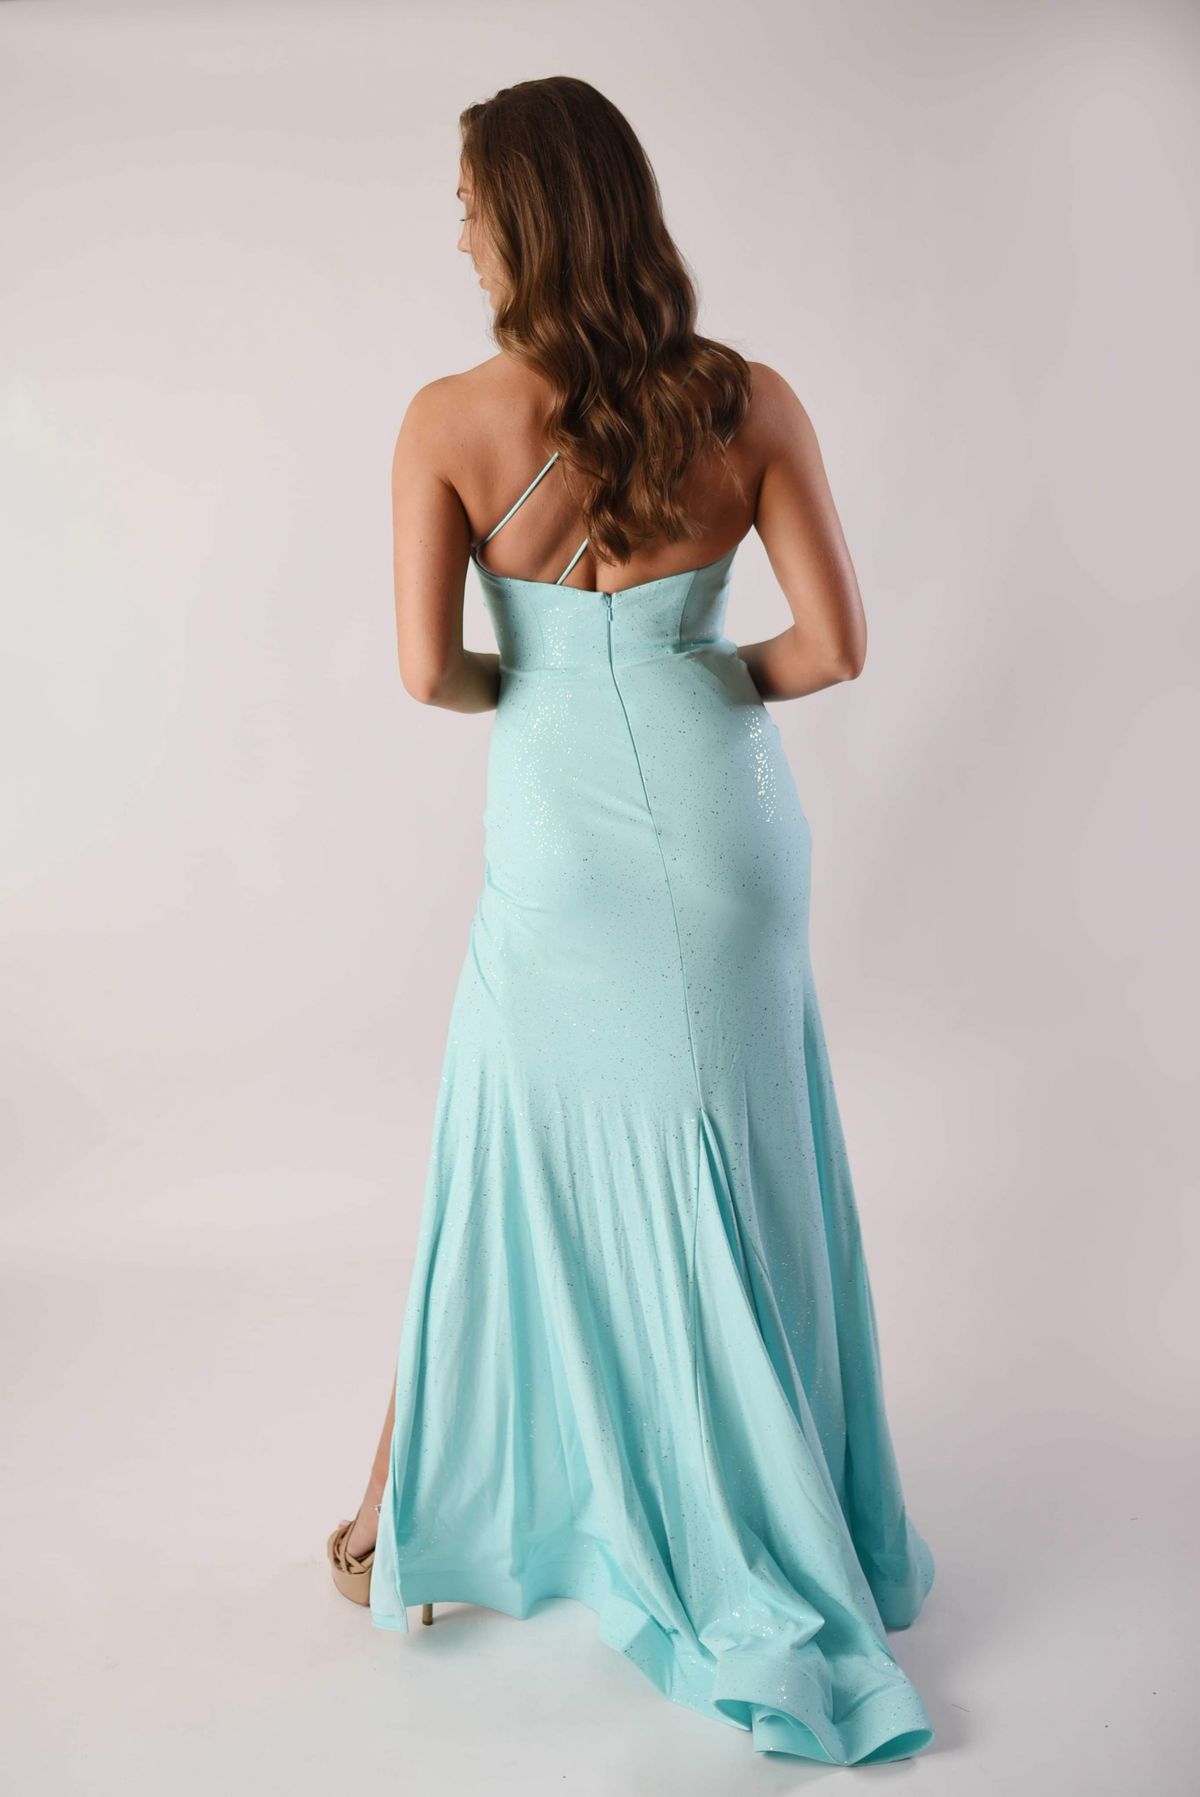 Ava Presley Size 2 Prom One Shoulder Blue Side Slit Dress on Queenly